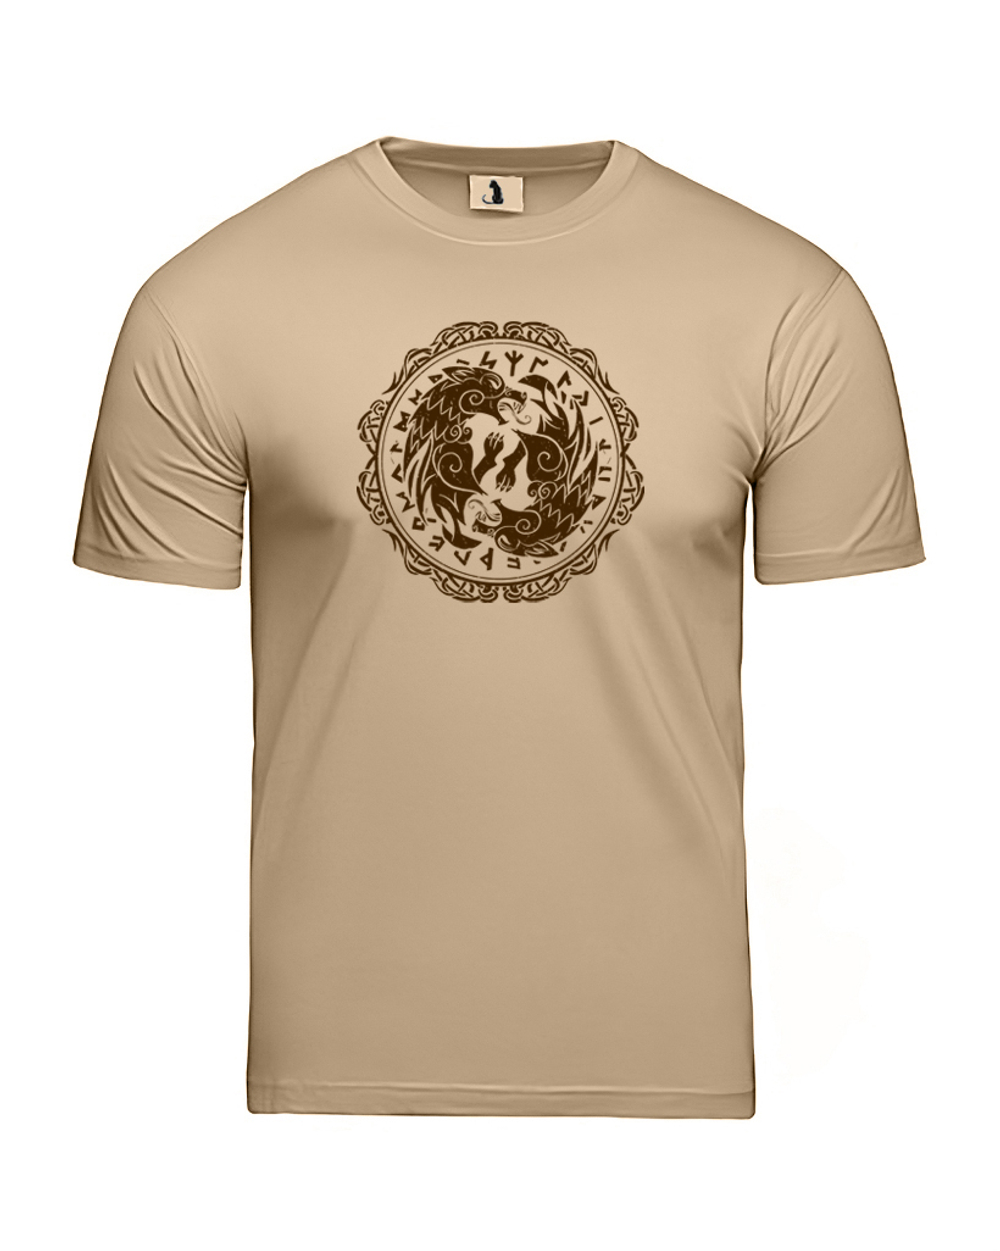 Скандинавская футболка с волком и рунами unisex бежевая с коричневым рисунком